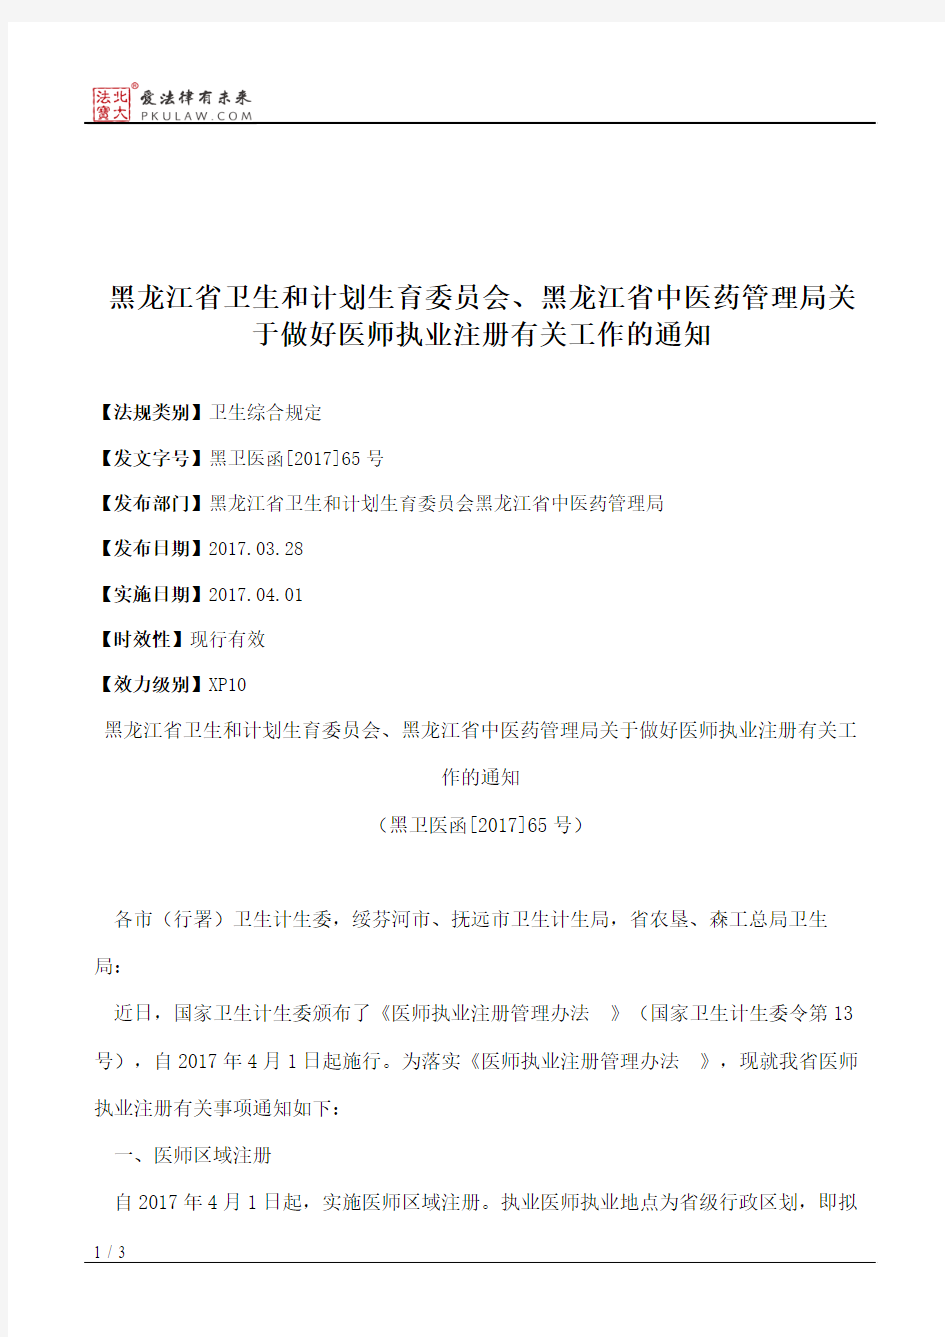 黑龙江省卫生和计划生育委员会、黑龙江省中医药管理局关于做好医